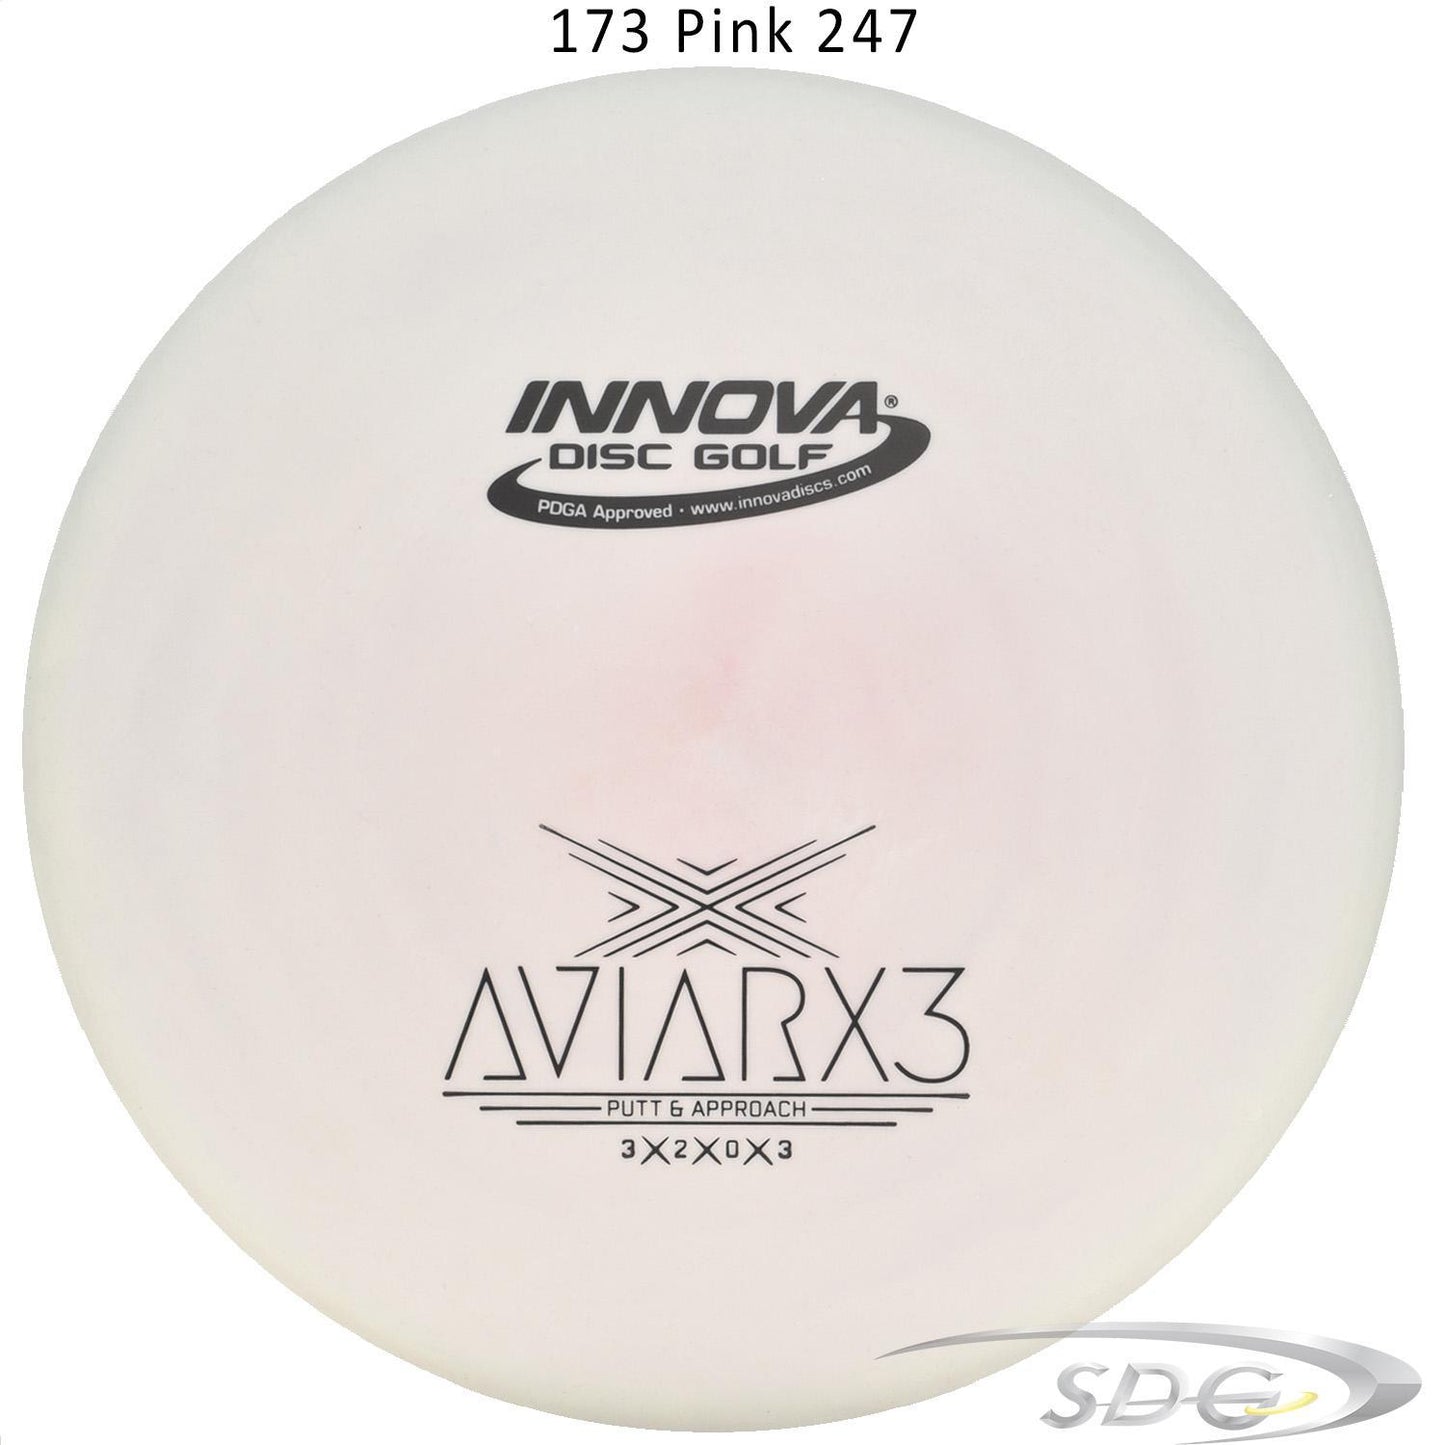 innova-dx-aviarx3-disc-golf-putter 173 Pink 247 